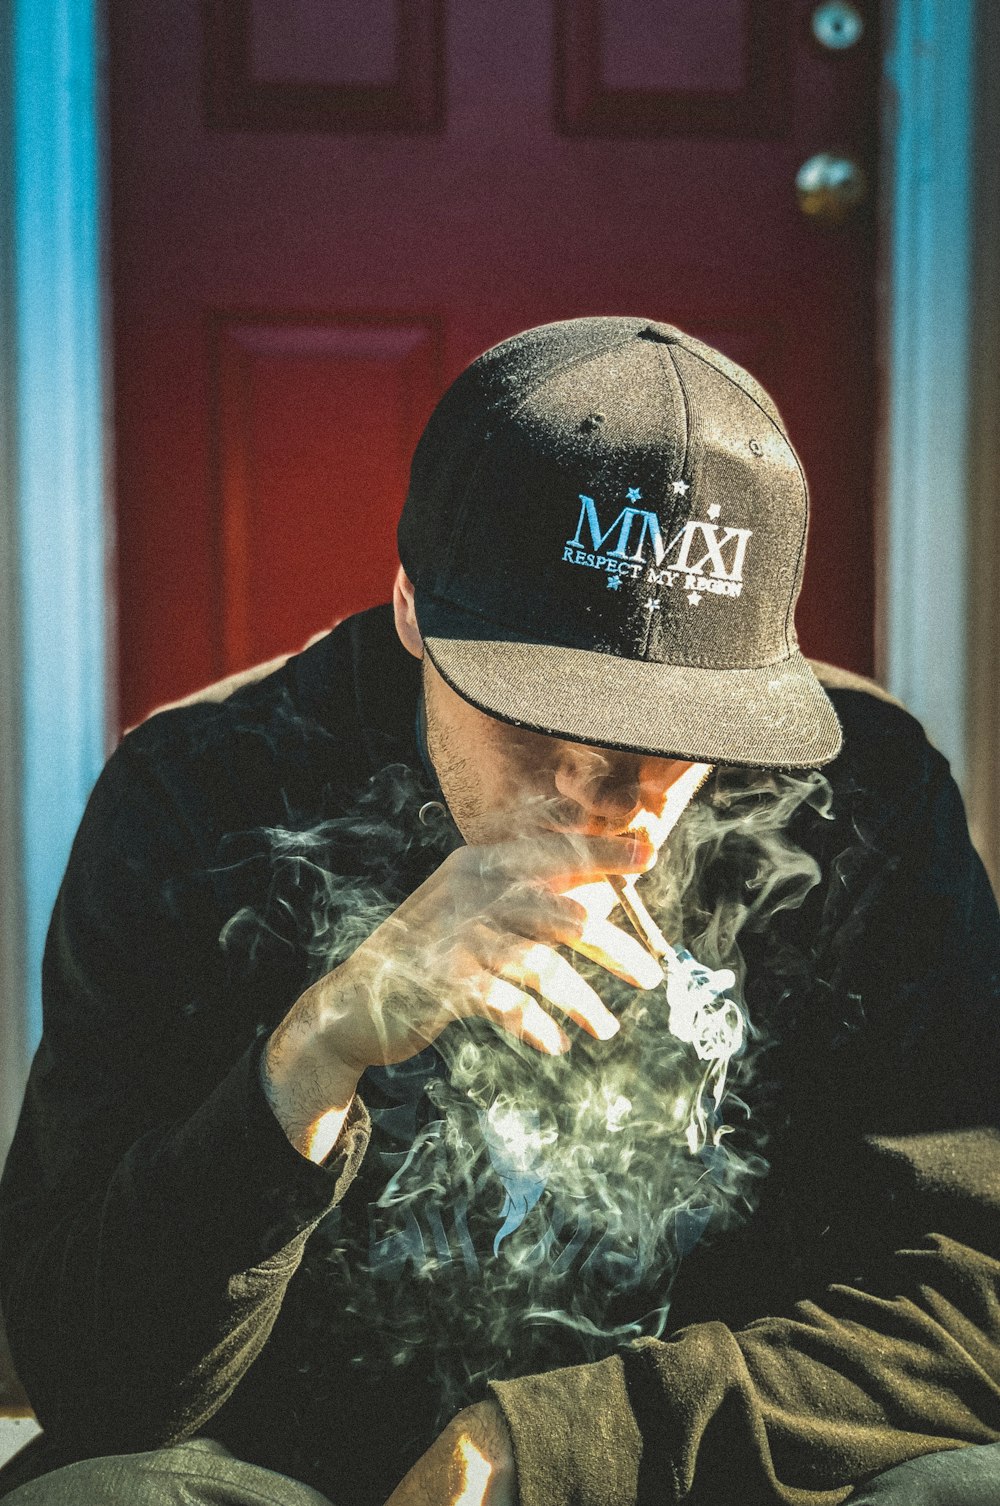 Mann mit schwarzer Mütze und Hemd sitzt in der Nähe der Tür und raucht